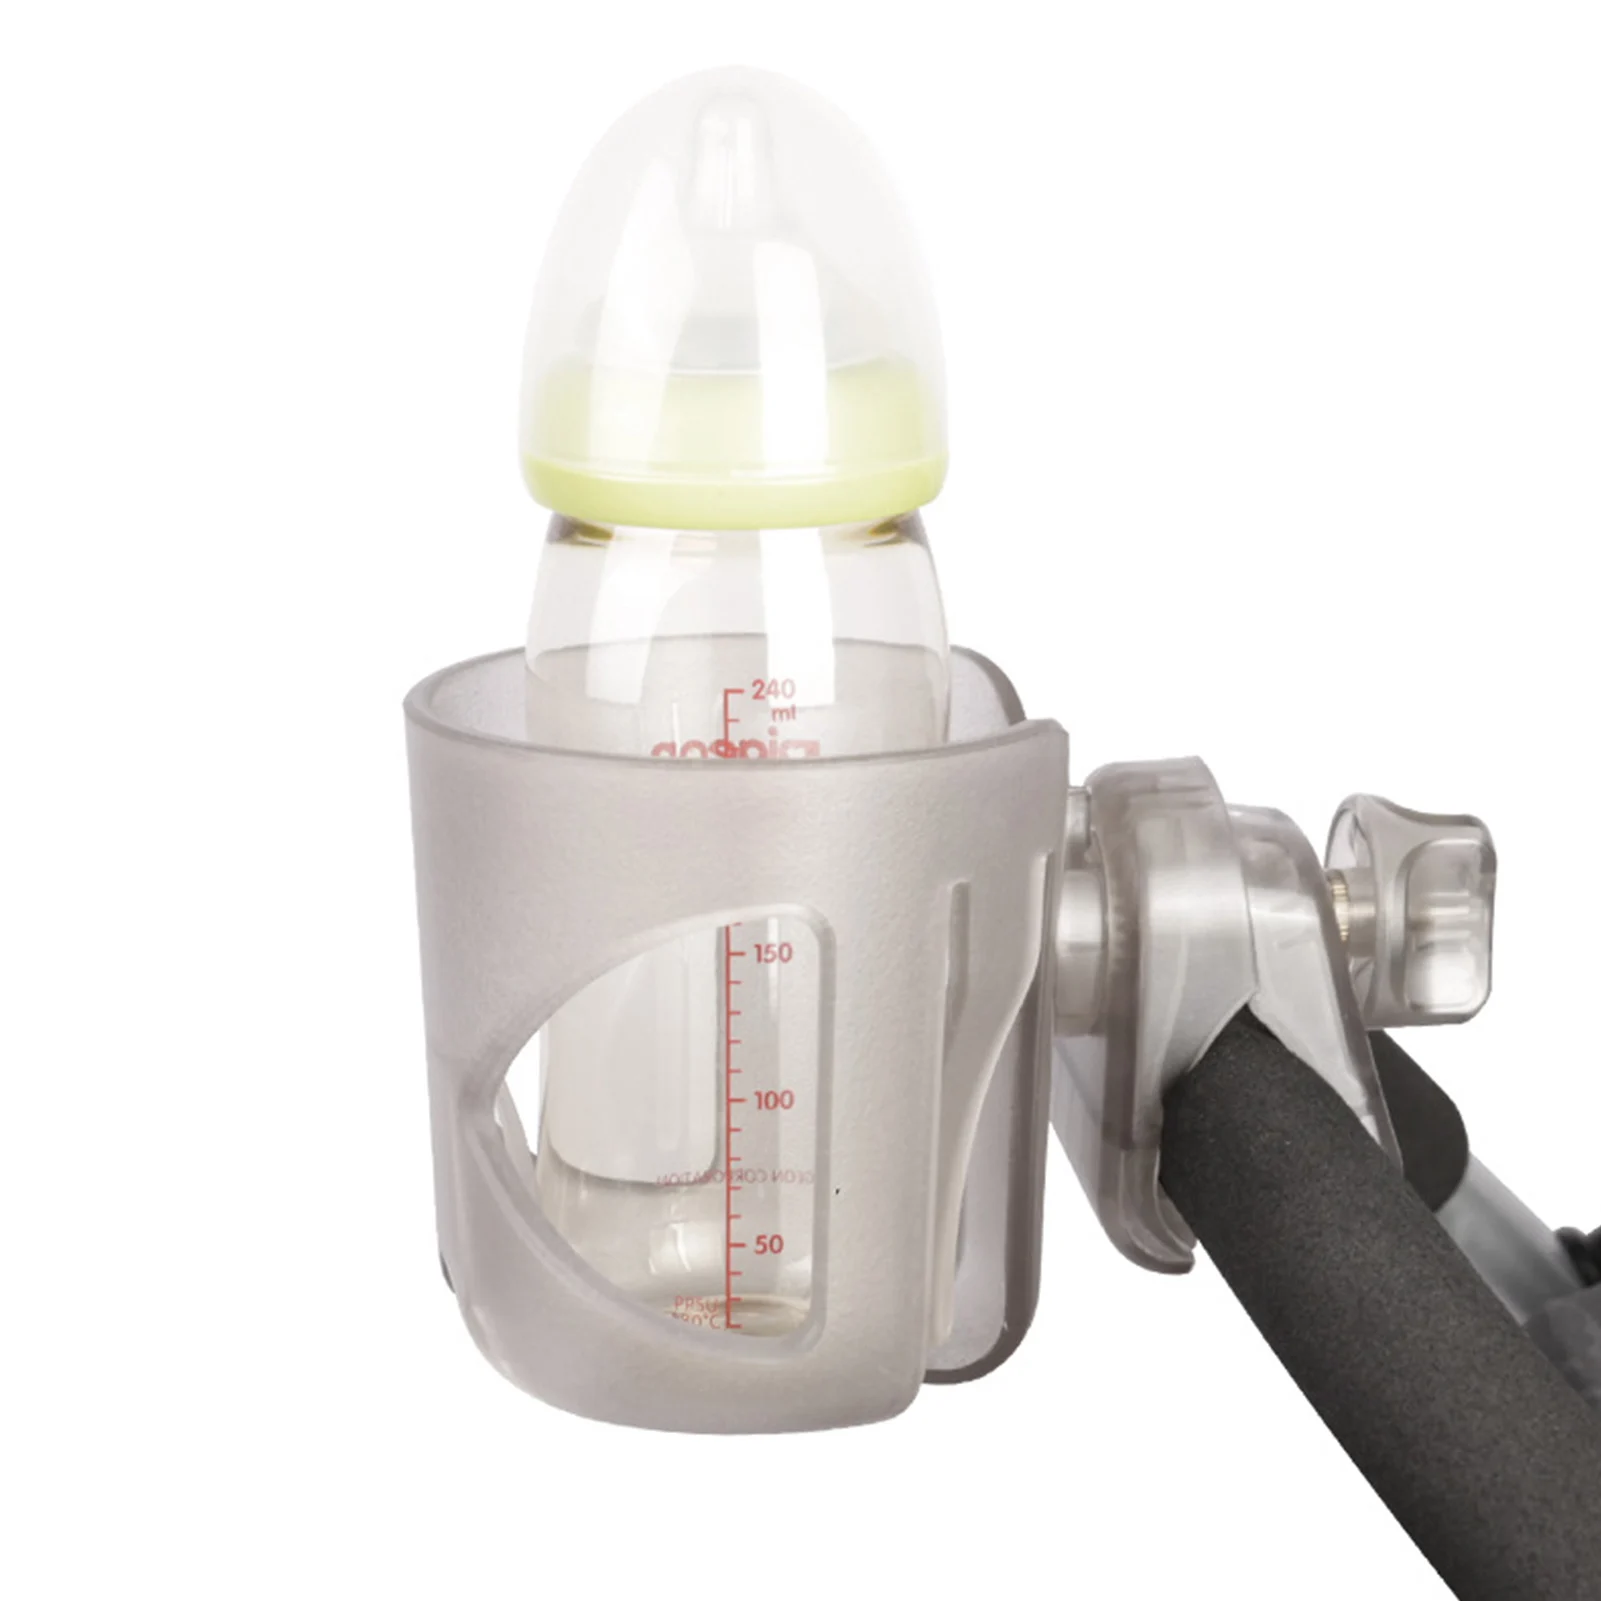 

Infant Car Cup Holder Transparent Cup Holder For Infants Portable Drink Holder For Stroller Compatible With Walker Rollator